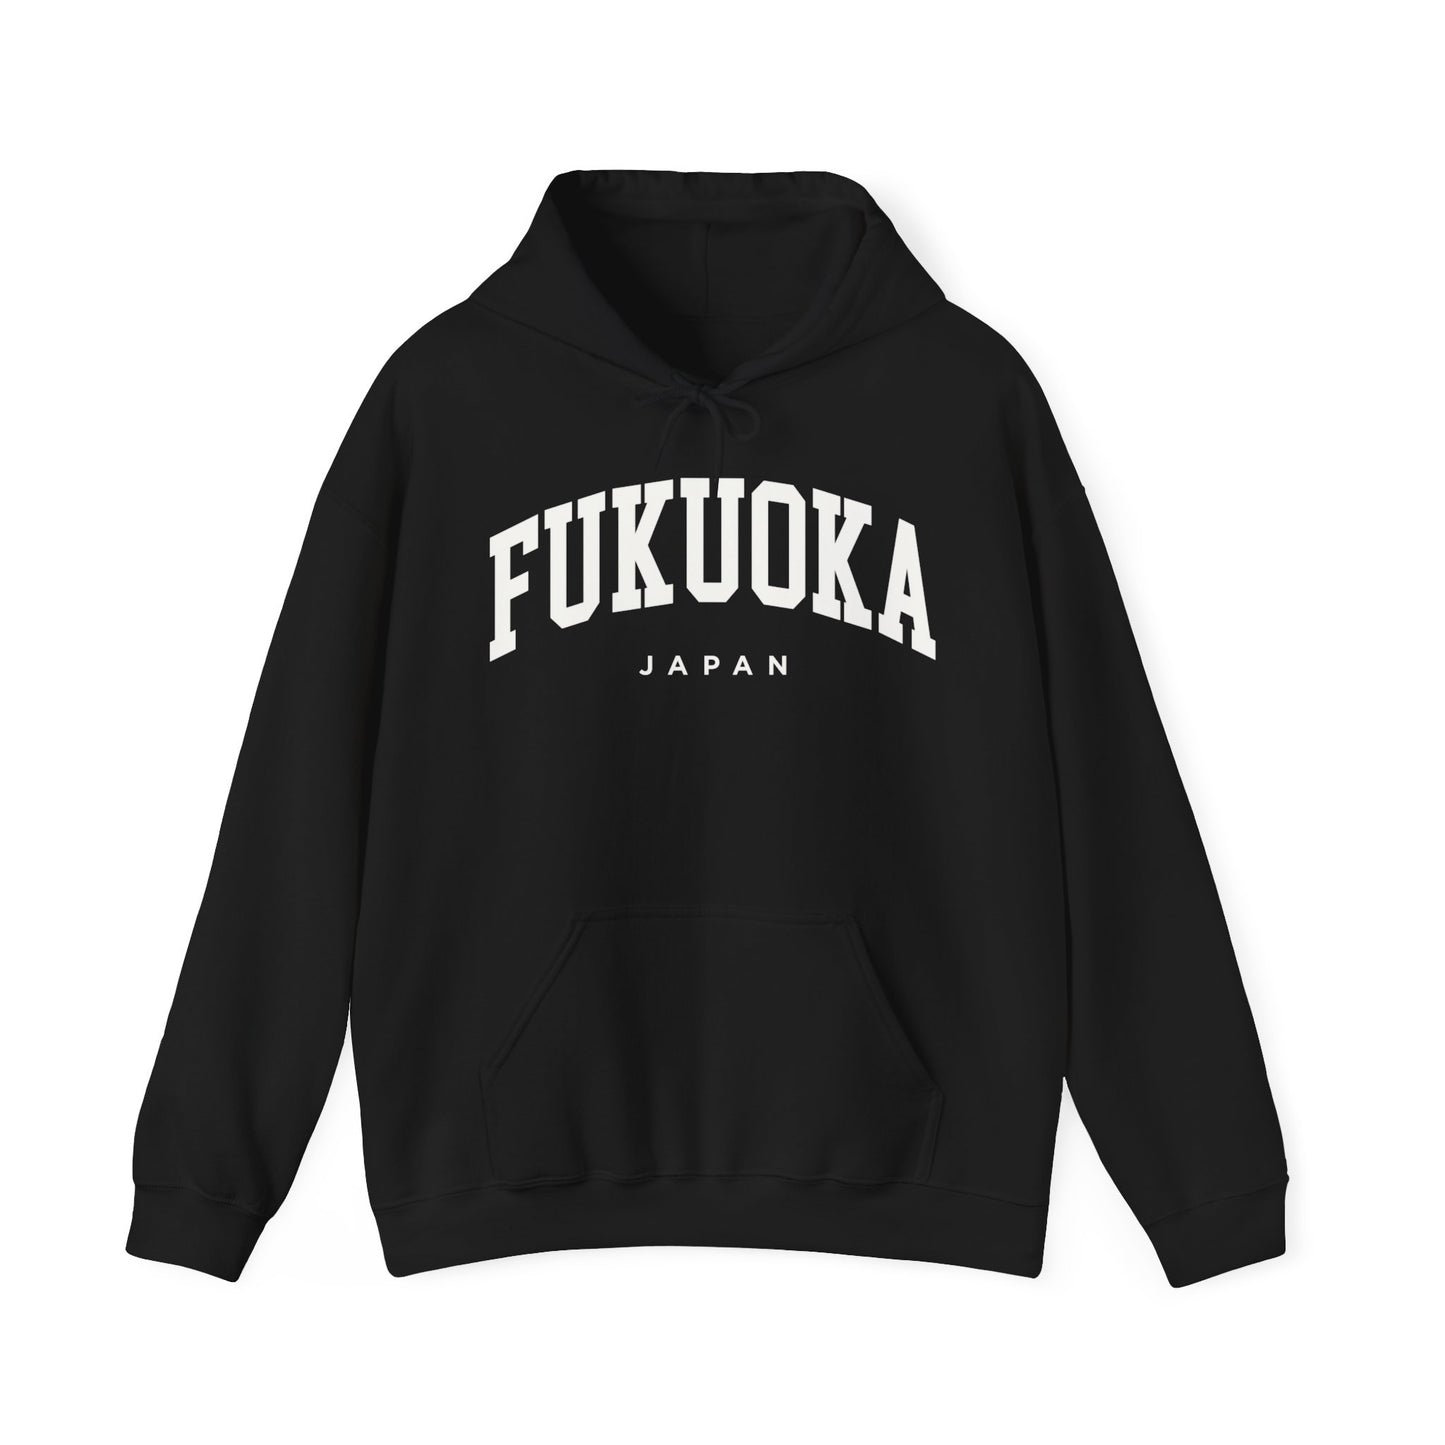 Fukuoka Japan Hoodie